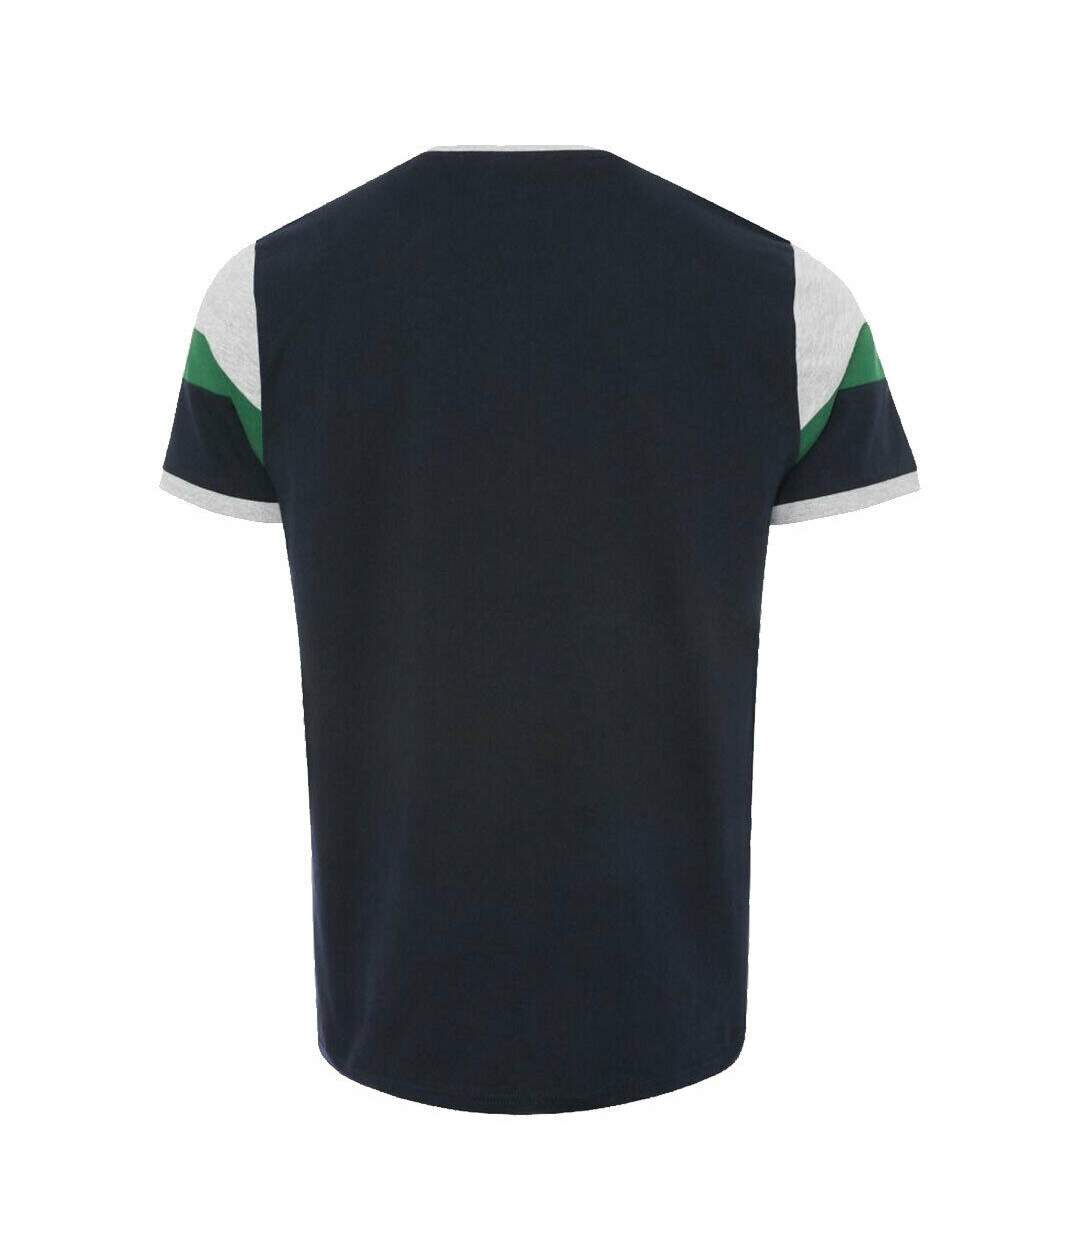 Liverpool FC - T-shirt - Homme (Bleu marine / Vert / Gris) - UTTA7880